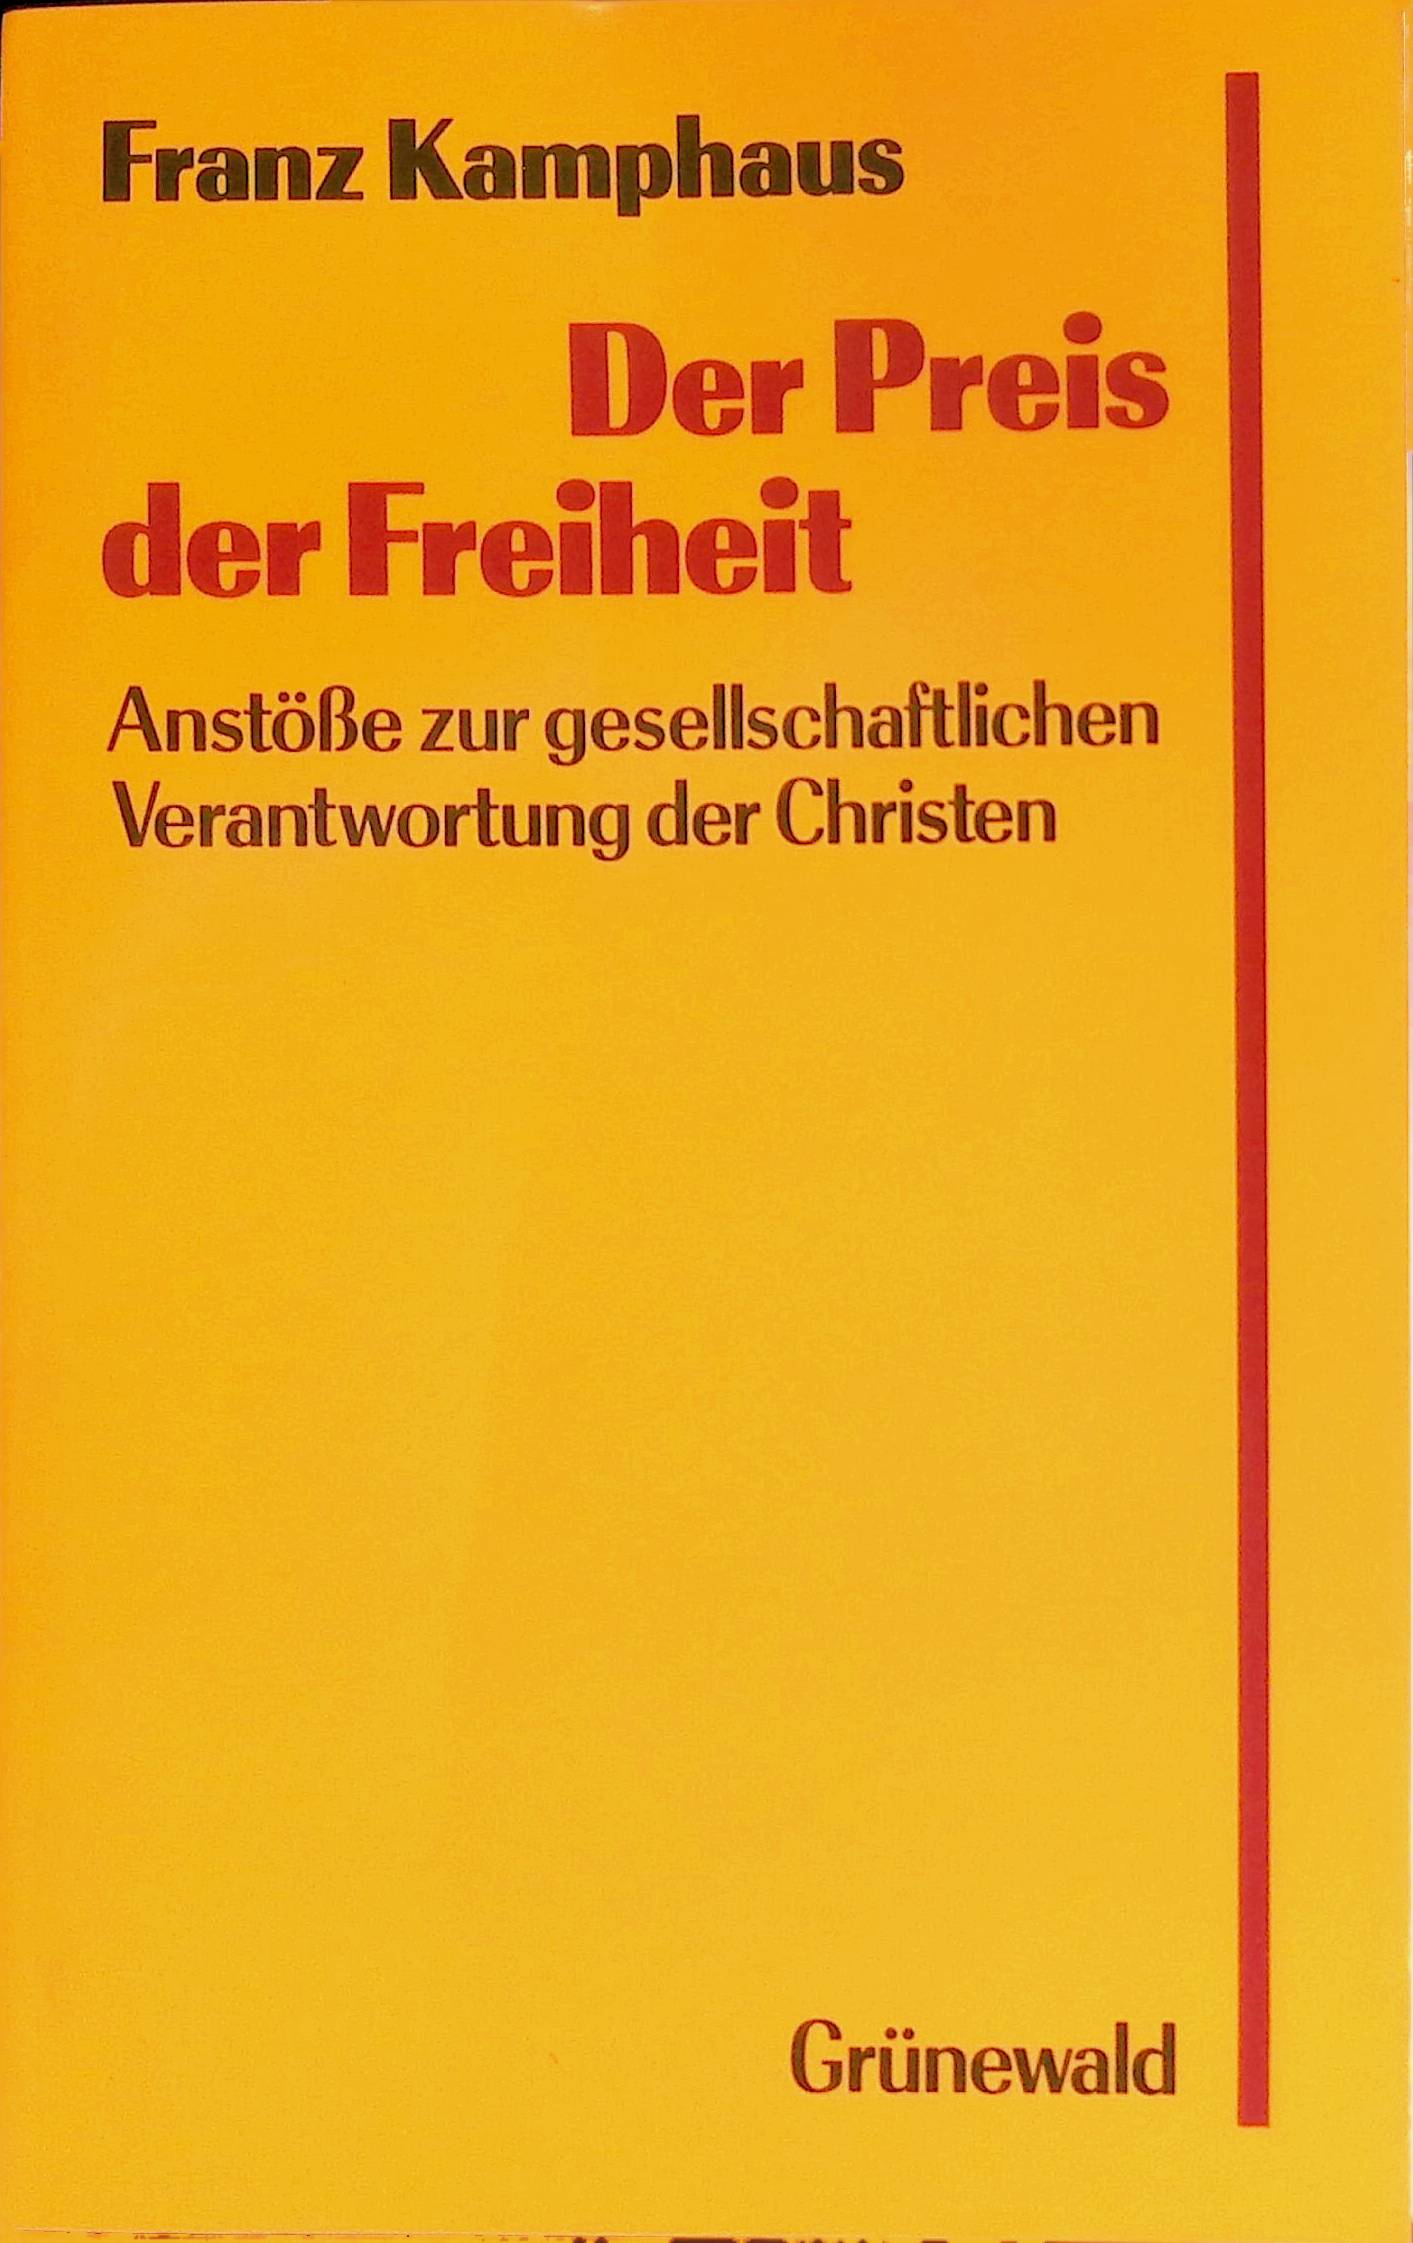 Der Preis der Freiheit : Anstösse zur gesellschaftl. Verantwortung d. Christen. - Kamphaus, Franz